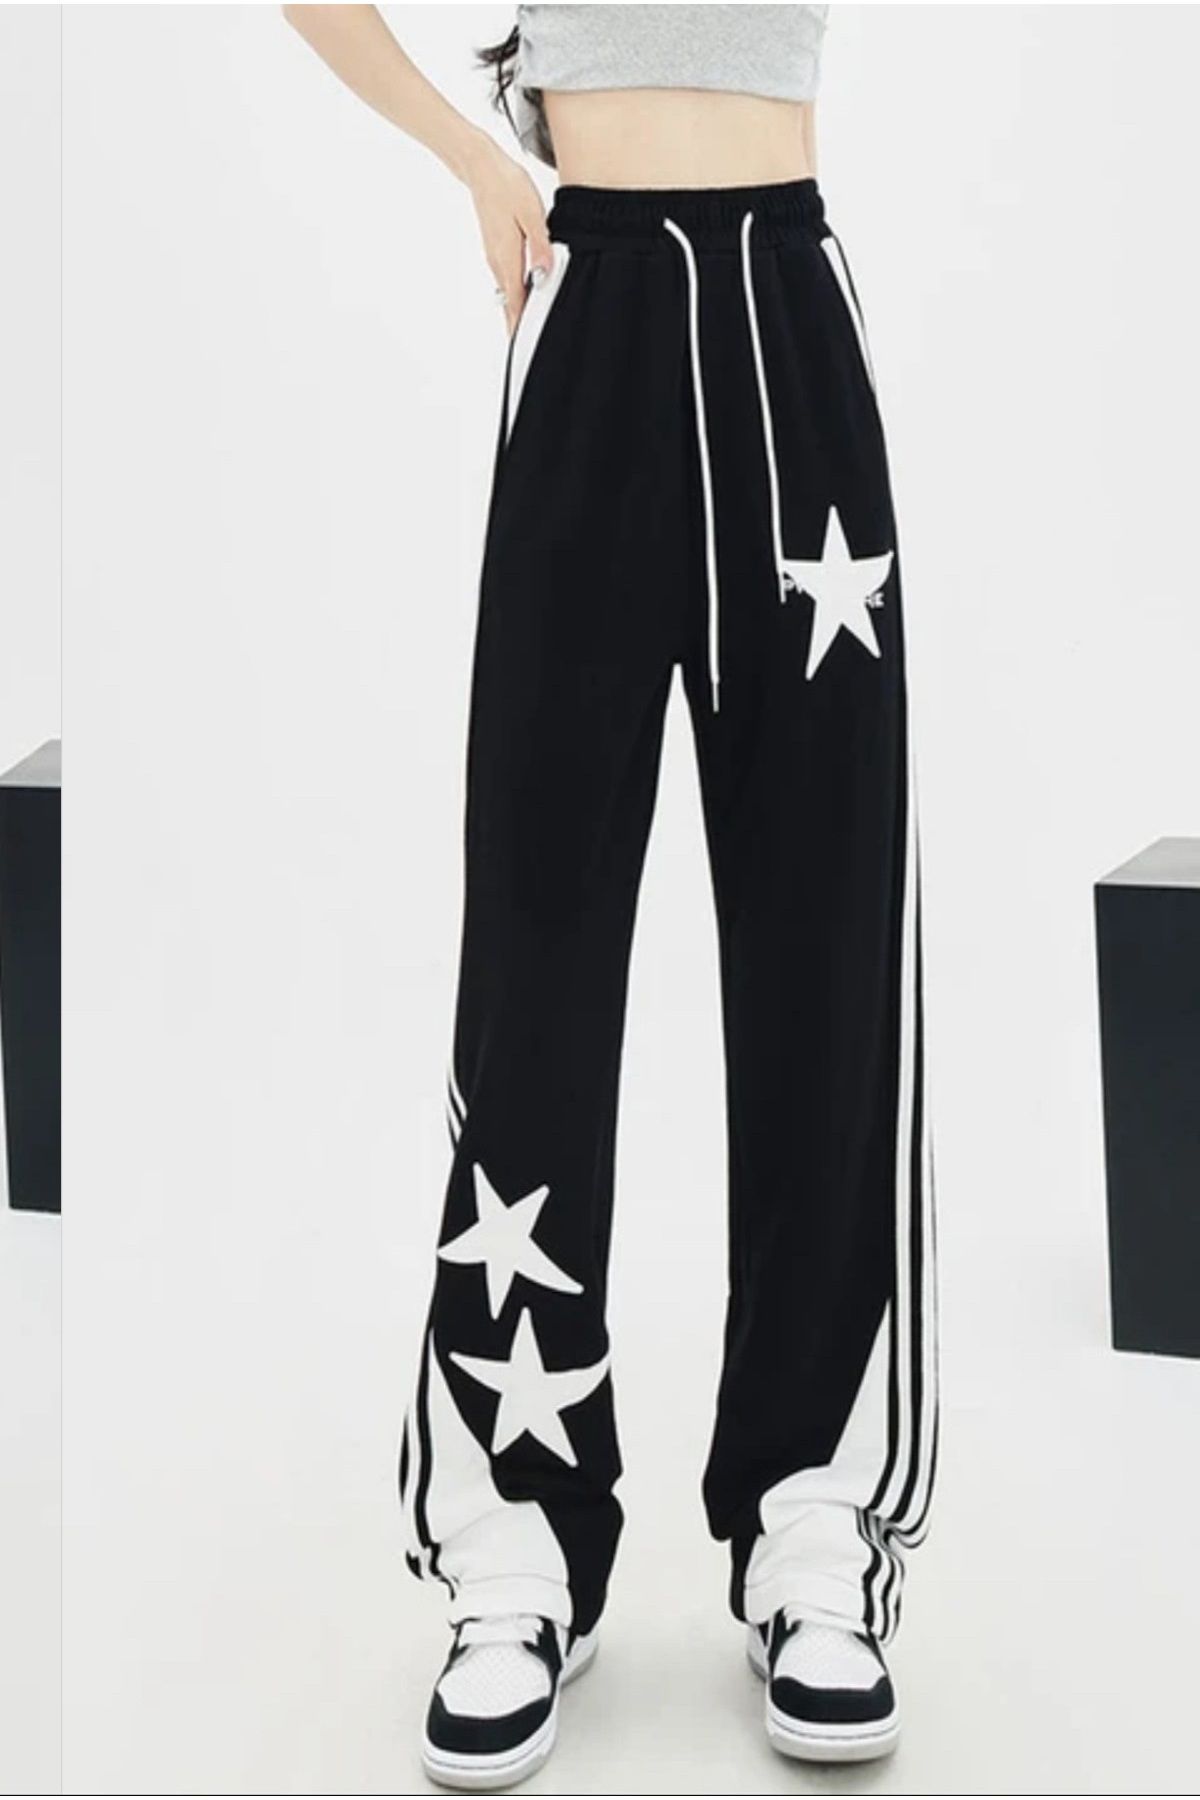 Köstebek NEFİGO Unisex Triple Star Yıldızlı Şeritli Siyah Alt Eşofman-Pantolon